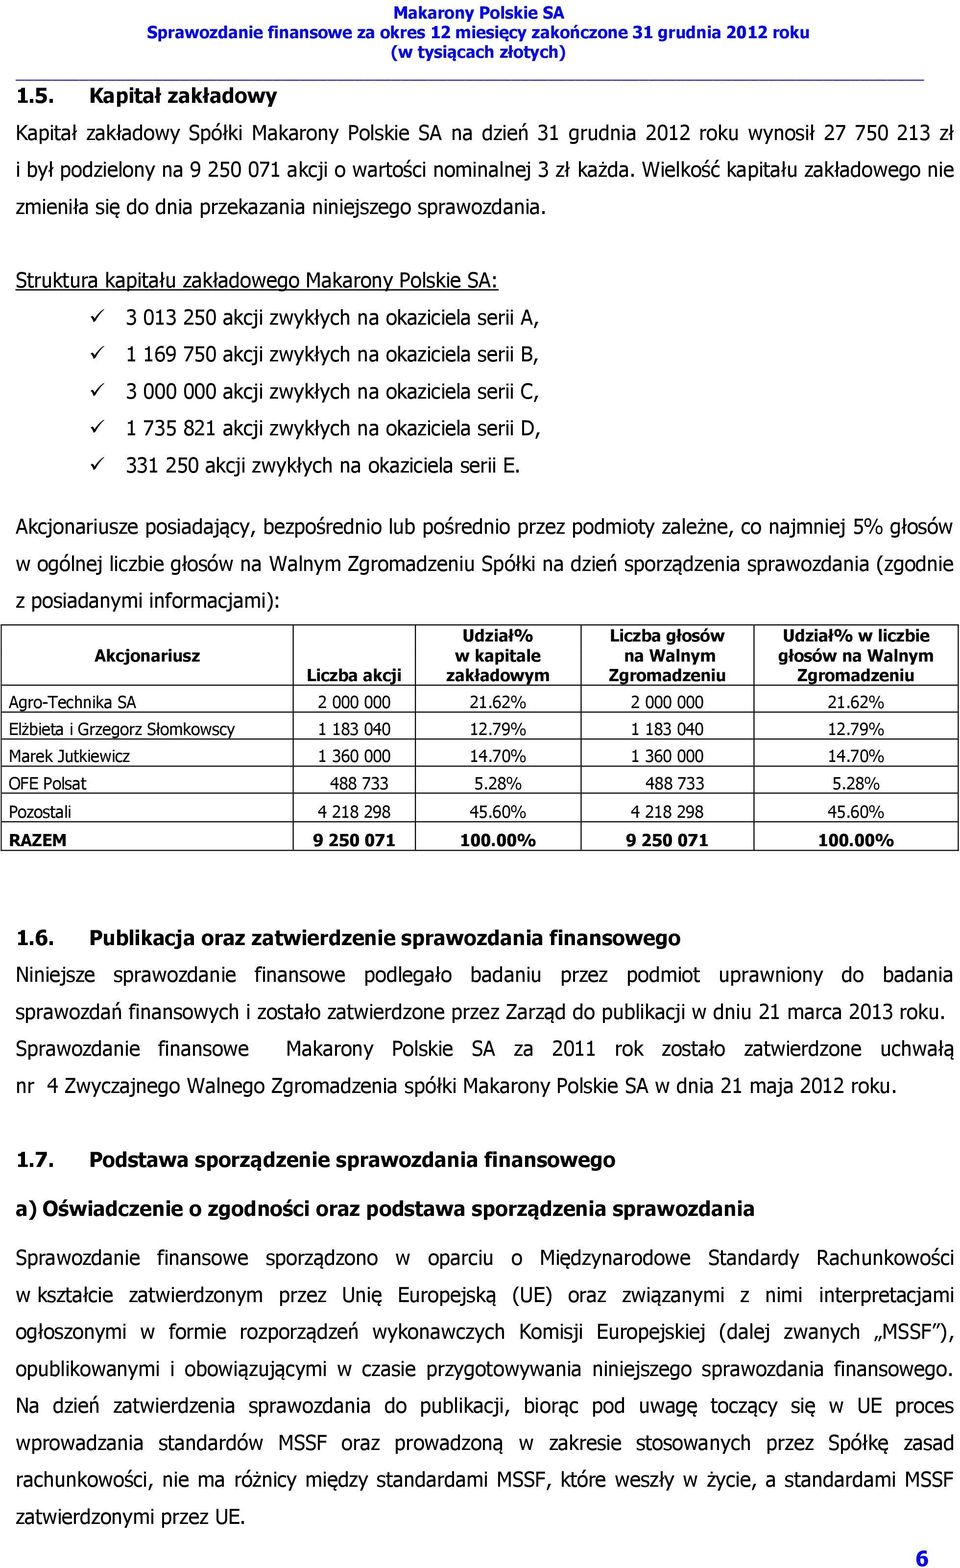 Struktura kapitału zakładowego Makarony Polskie SA: 3 013 250 akcji zwykłych na okaziciela serii A, 1 169 750 akcji zwykłych na okaziciela serii B, 3 000 000 akcji zwykłych na okaziciela serii C, 1